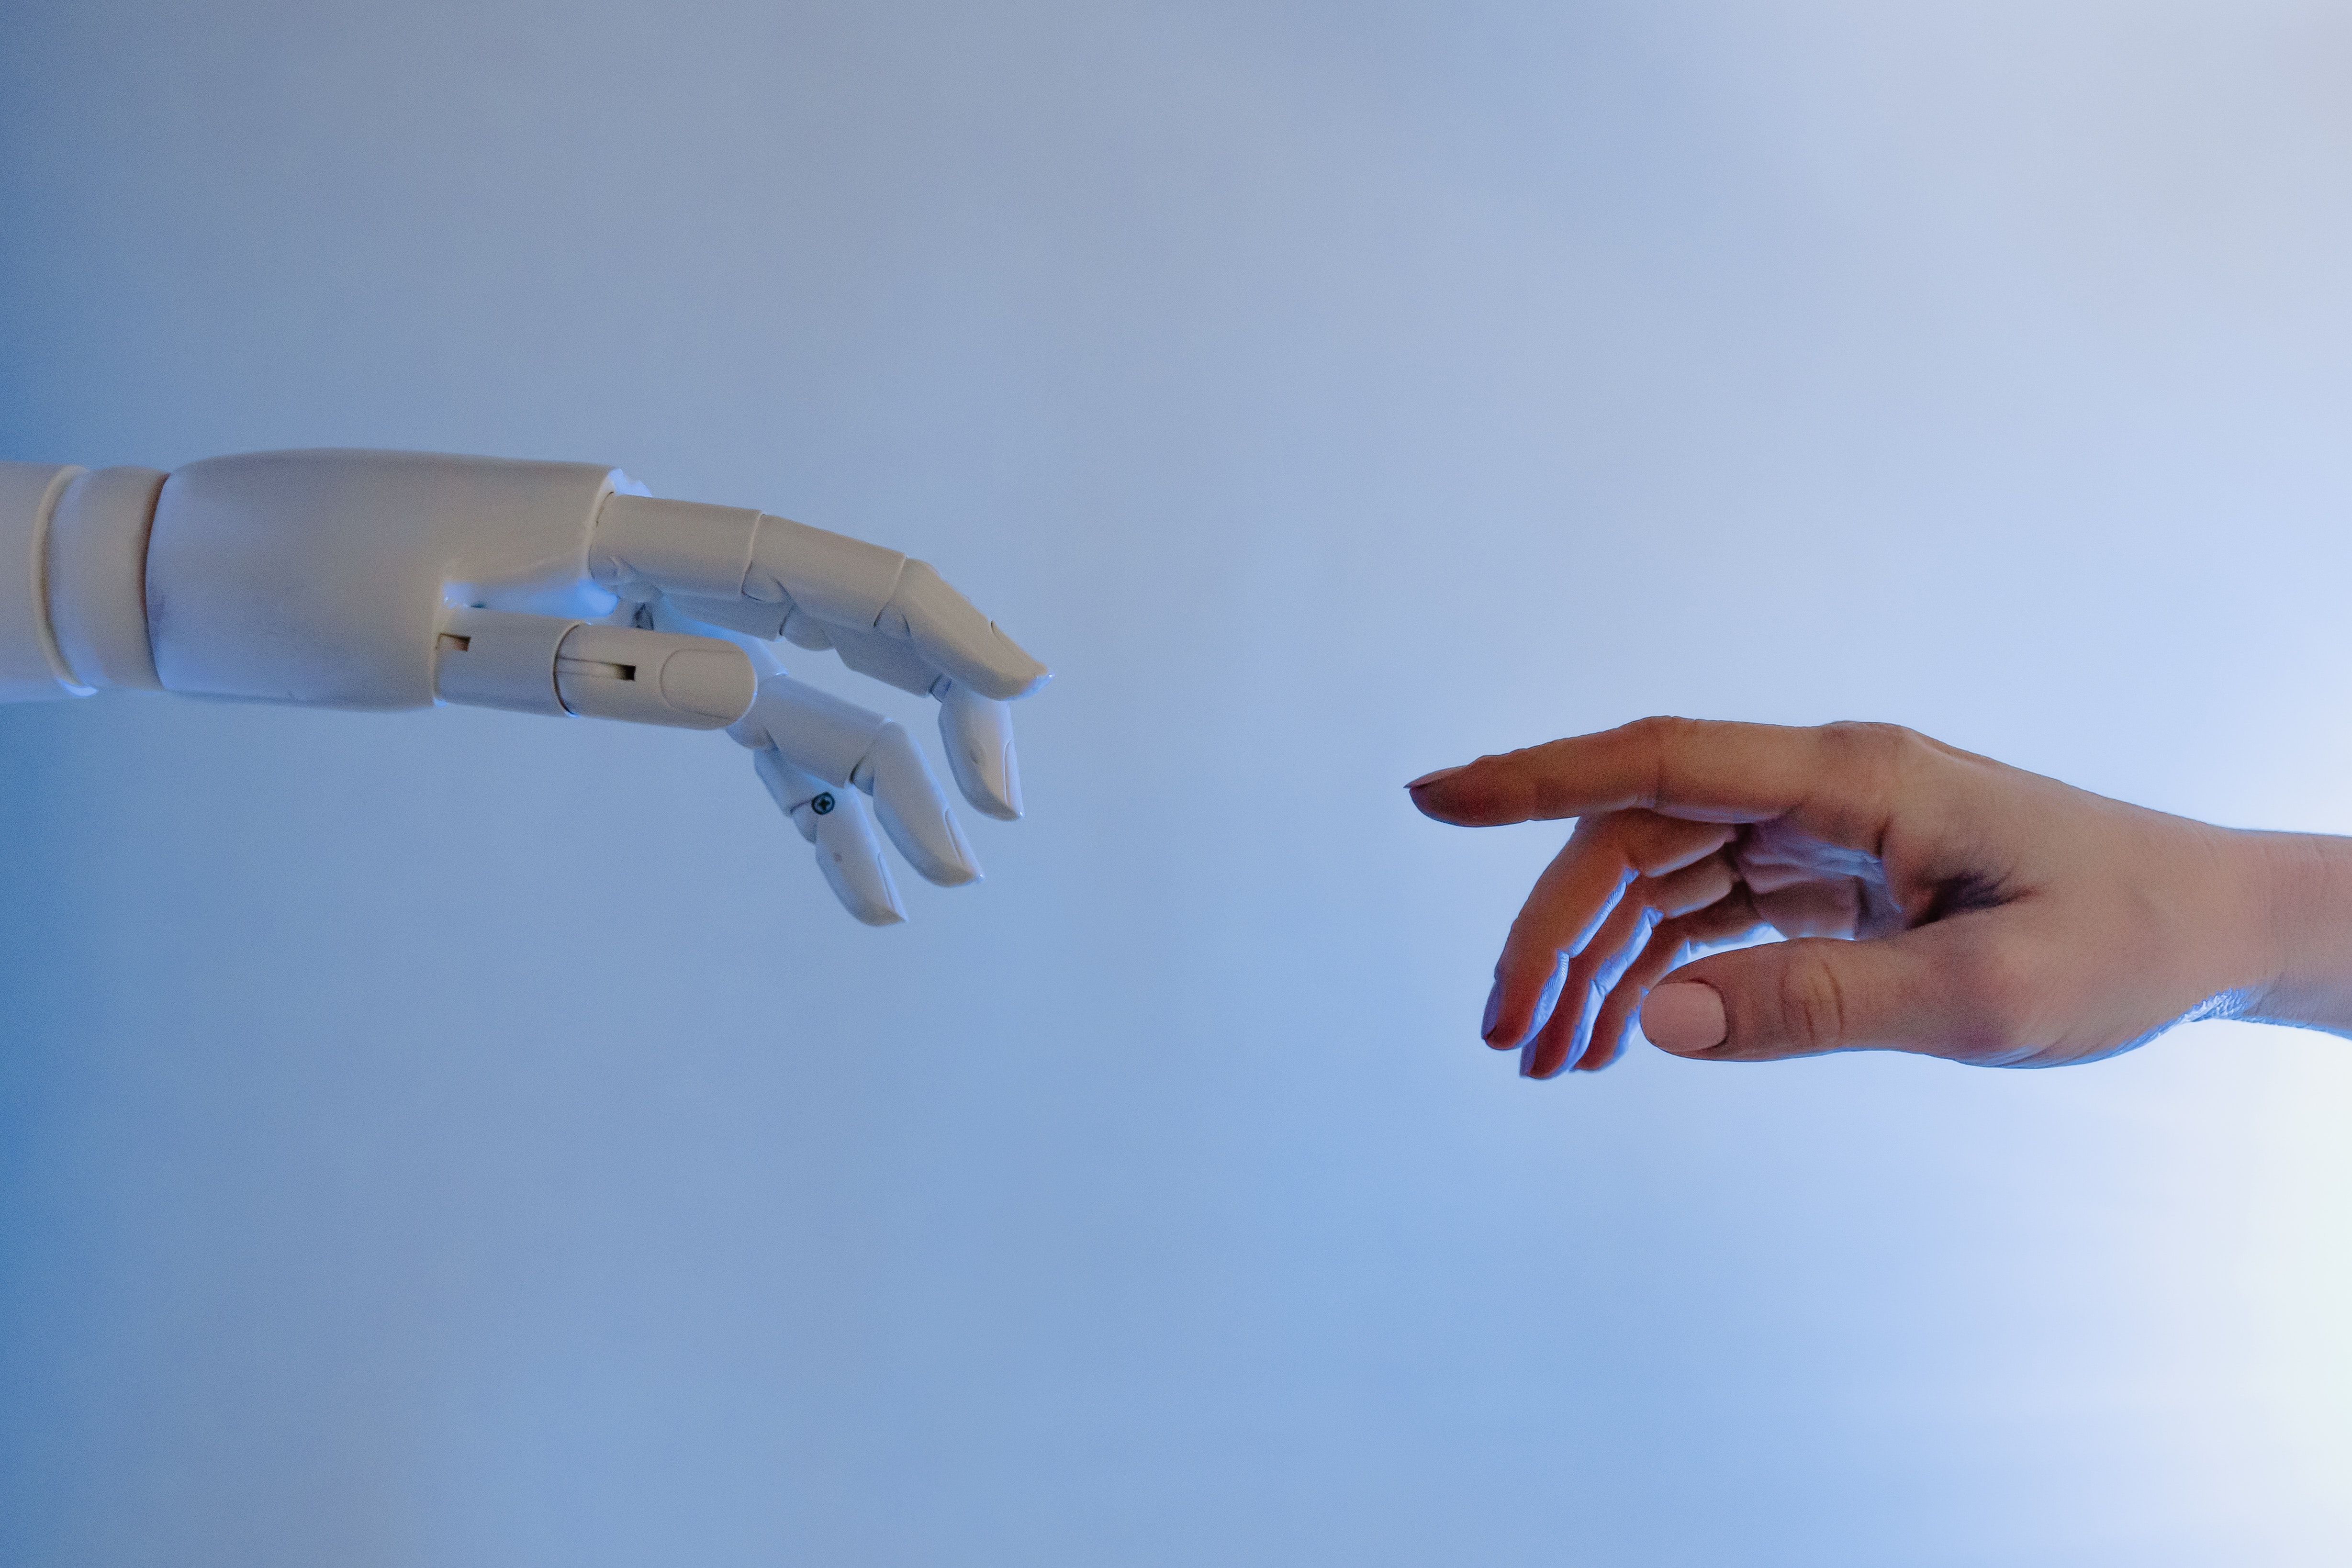 Begegnung Mensch-Roboter (Symbolbild)